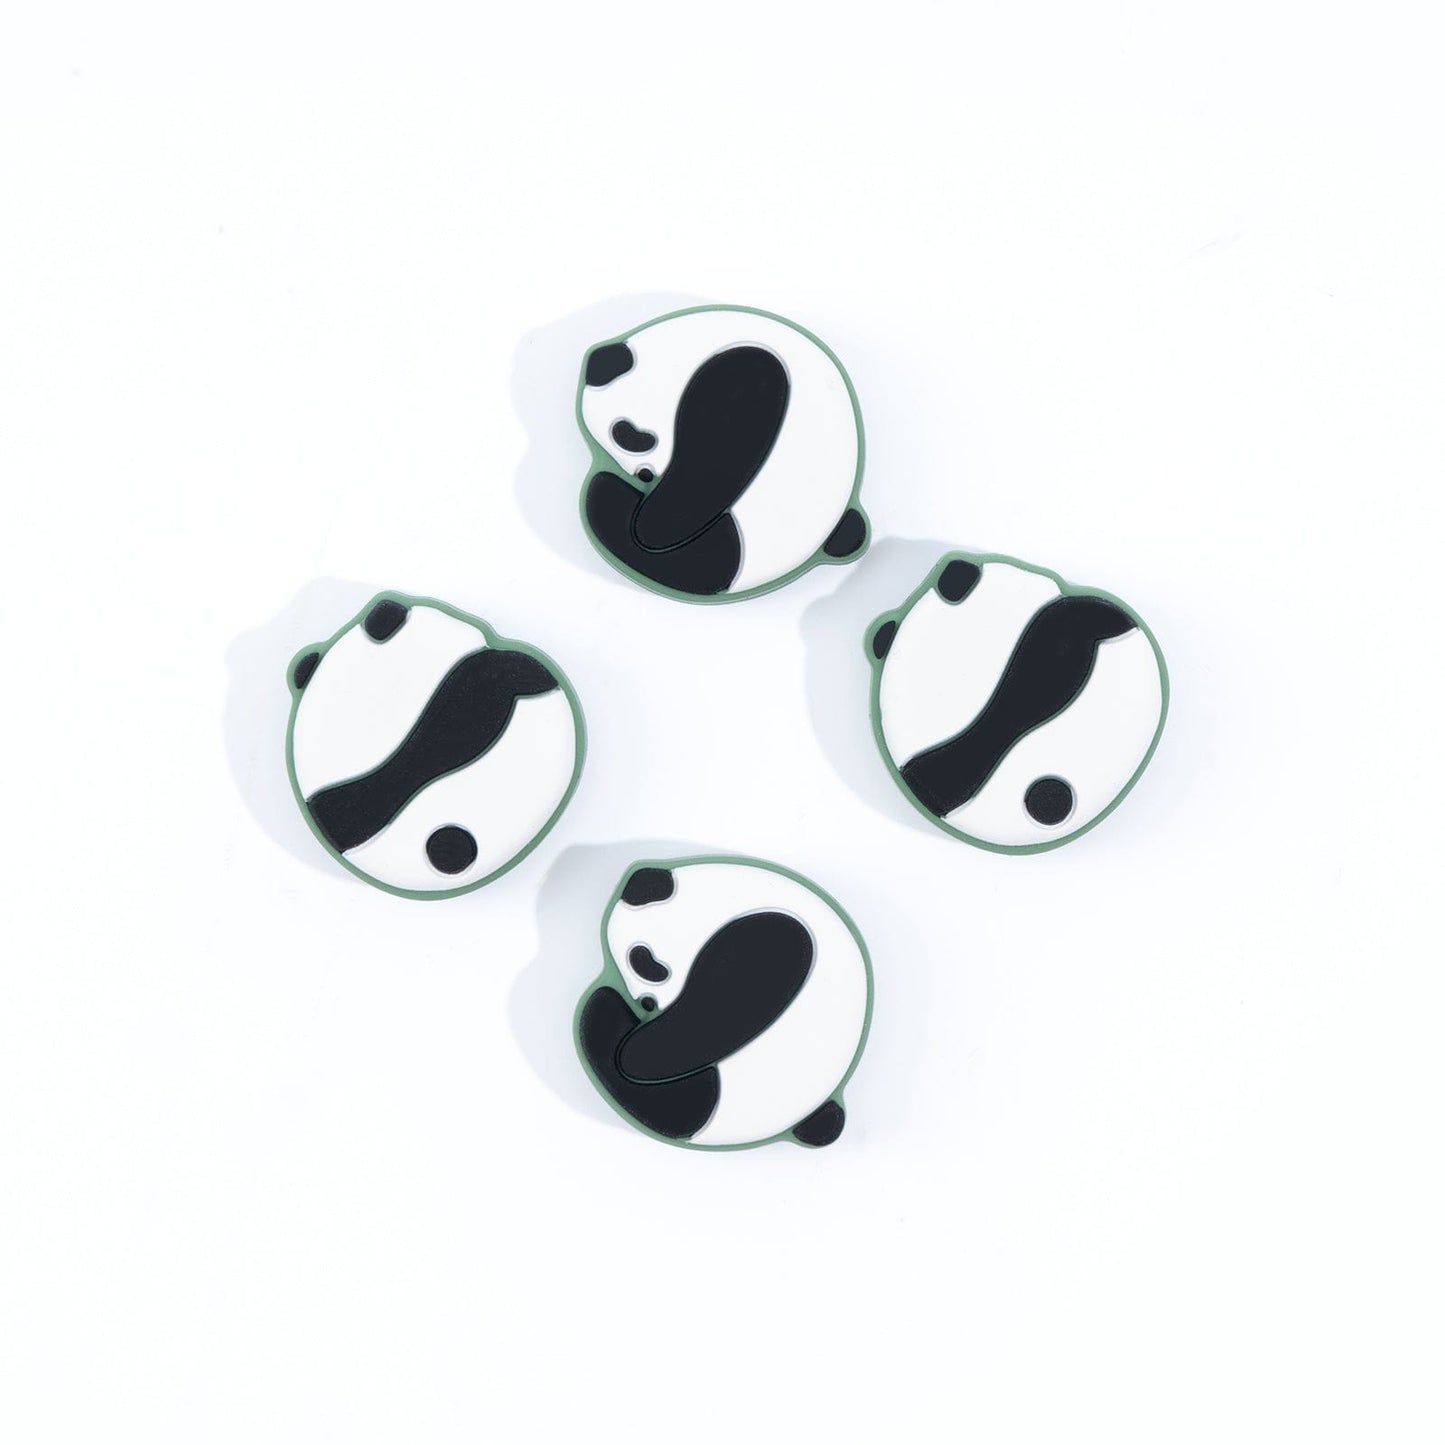 GeekShare Panda Thumb Grip Caps